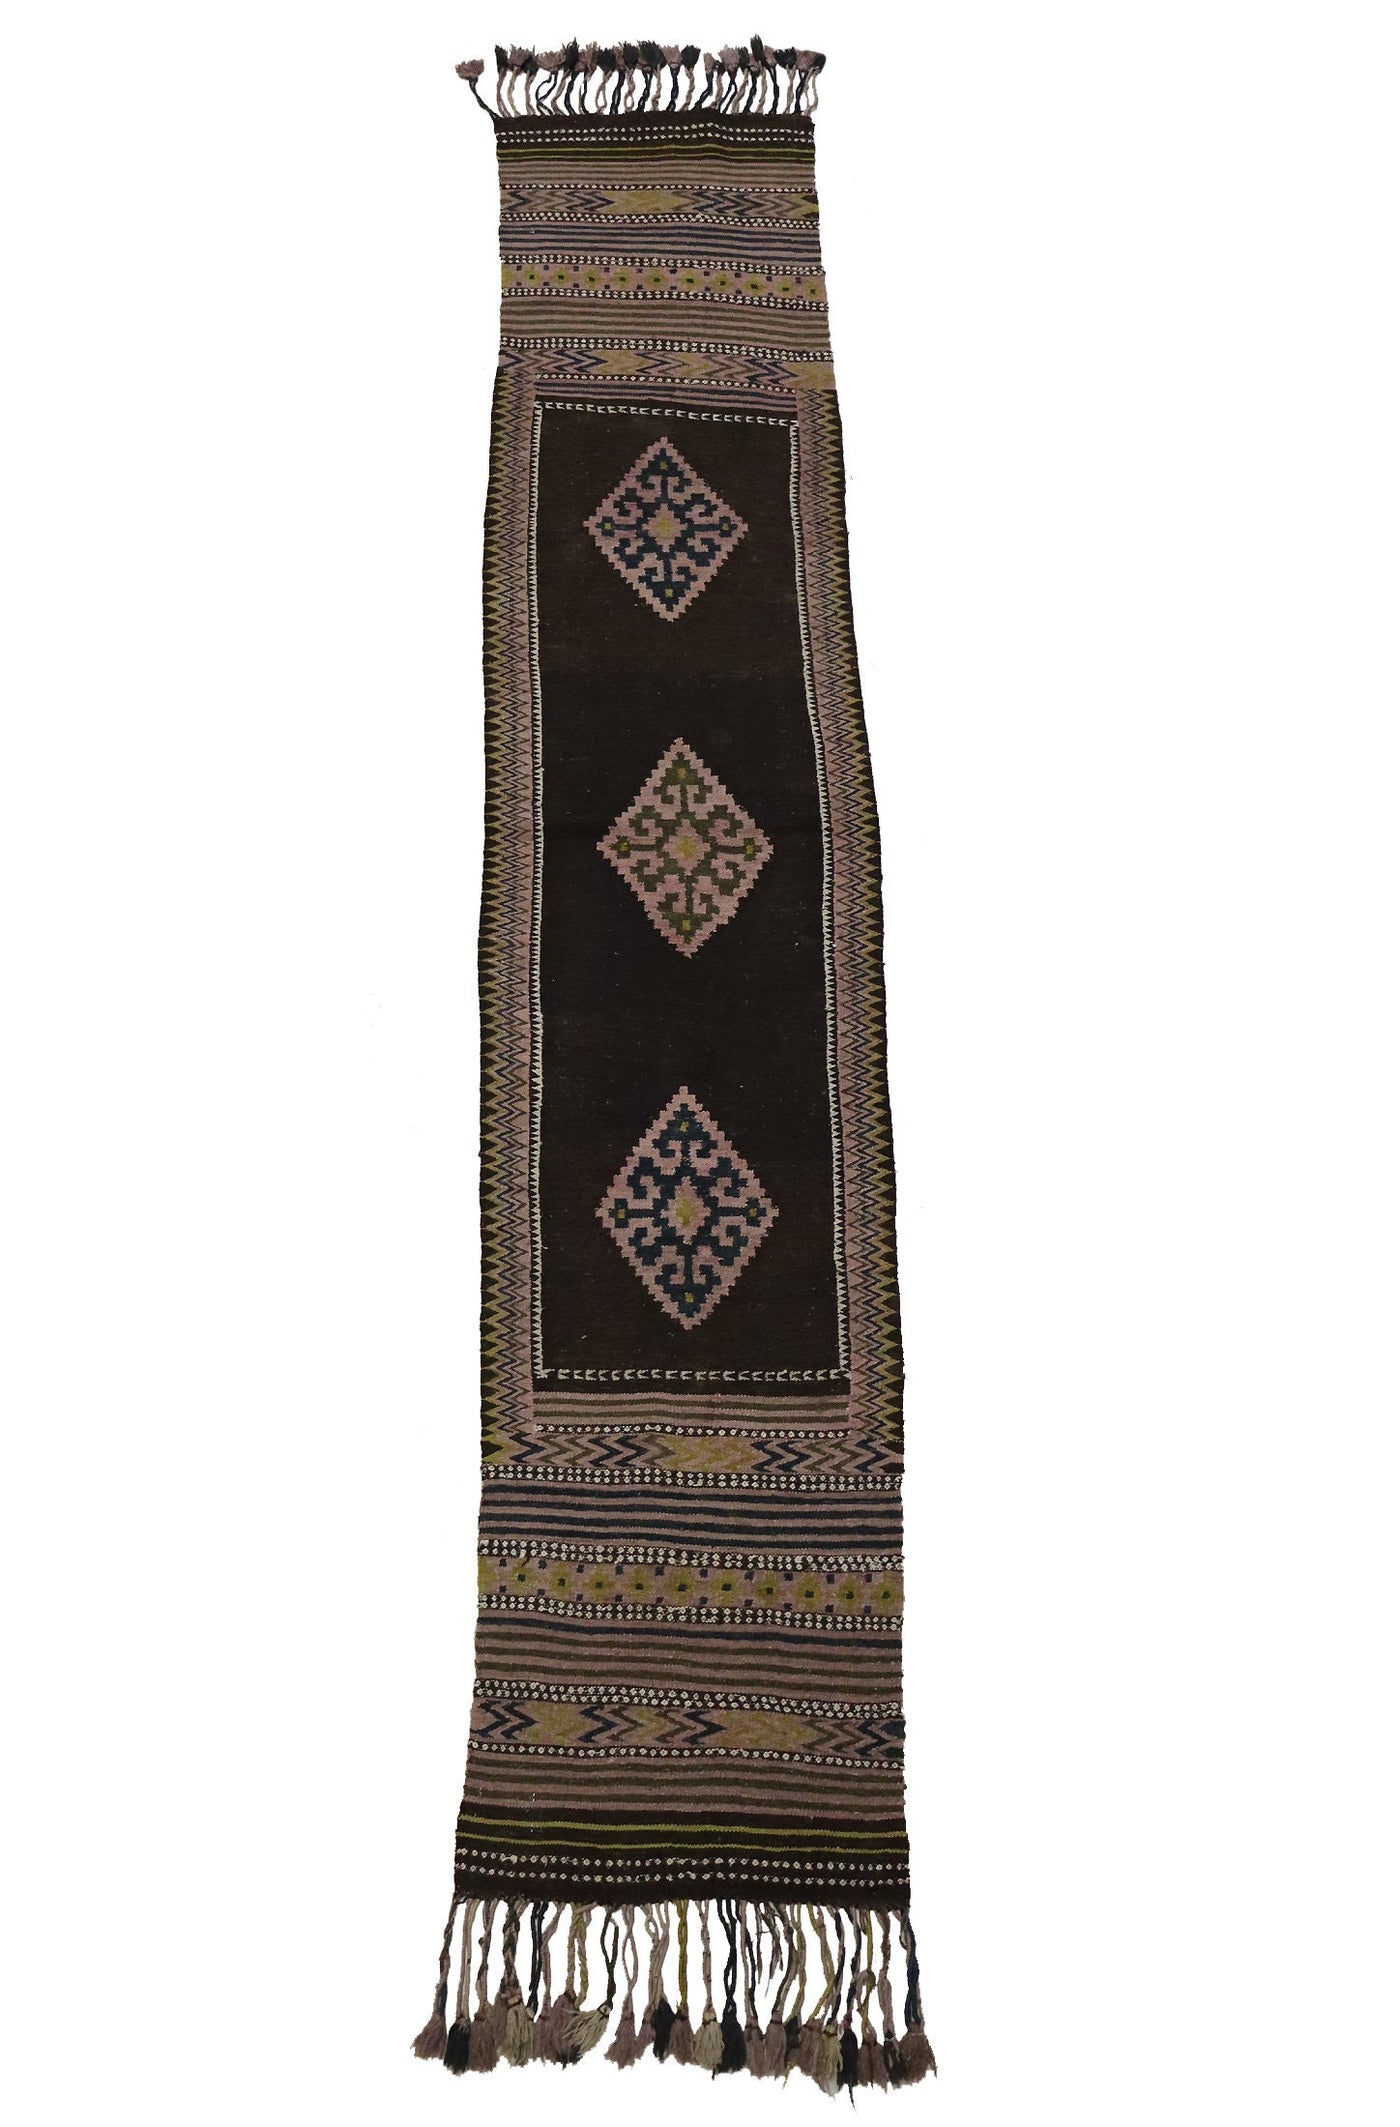 315x60 cm orient Teppich Afghanistan Nomaden kelim afghan Tataren kilim läufer Galerie flur teppich No:505  Orientsbazar   